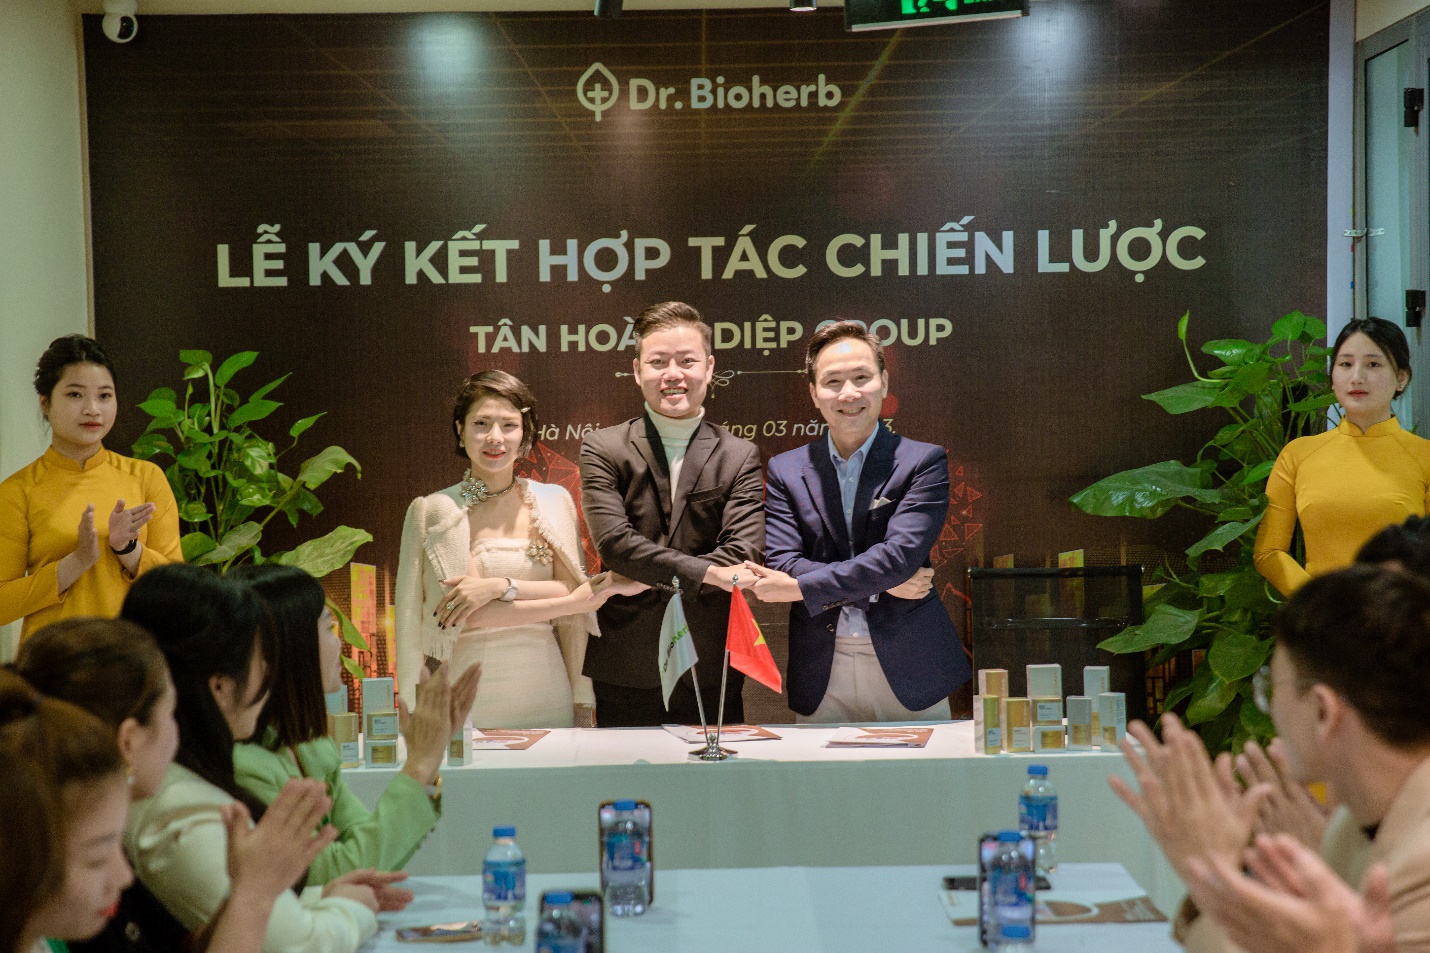 DR.Bioherb cung cấp giải pháp toàn diện cho các chủ cơ sở làm đẹp và người tiêu dùng Việt - 6